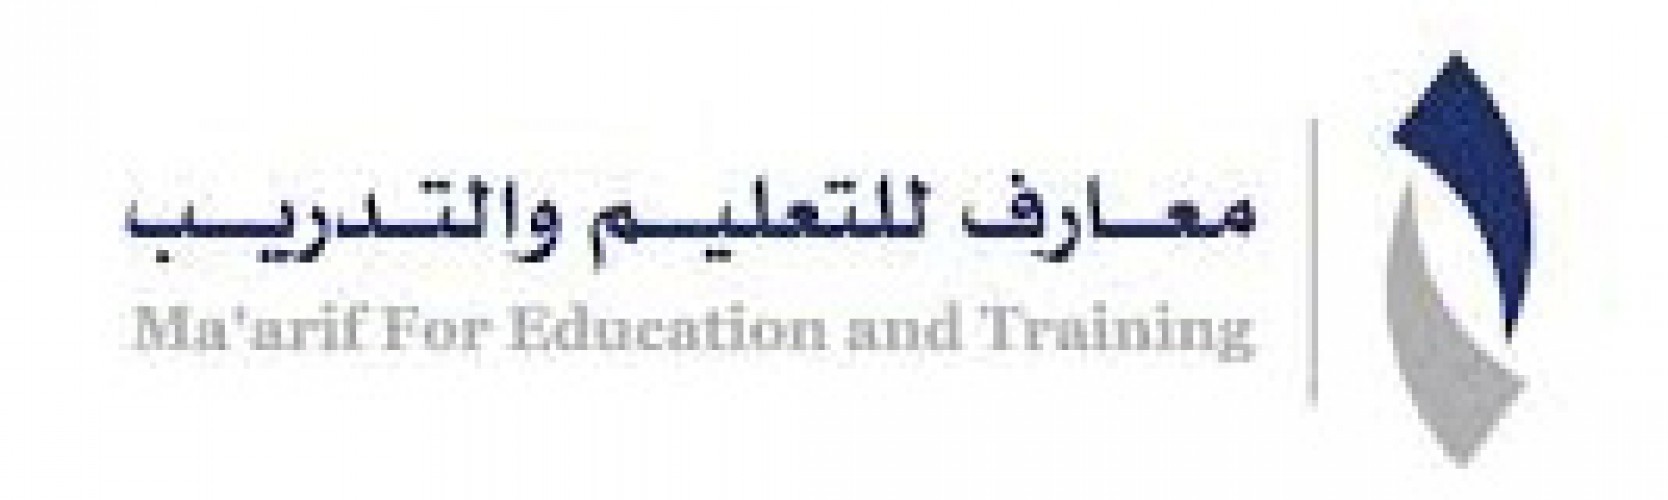 وظائف تقنية بشركة معارف التعليم والتدريب في الرياض